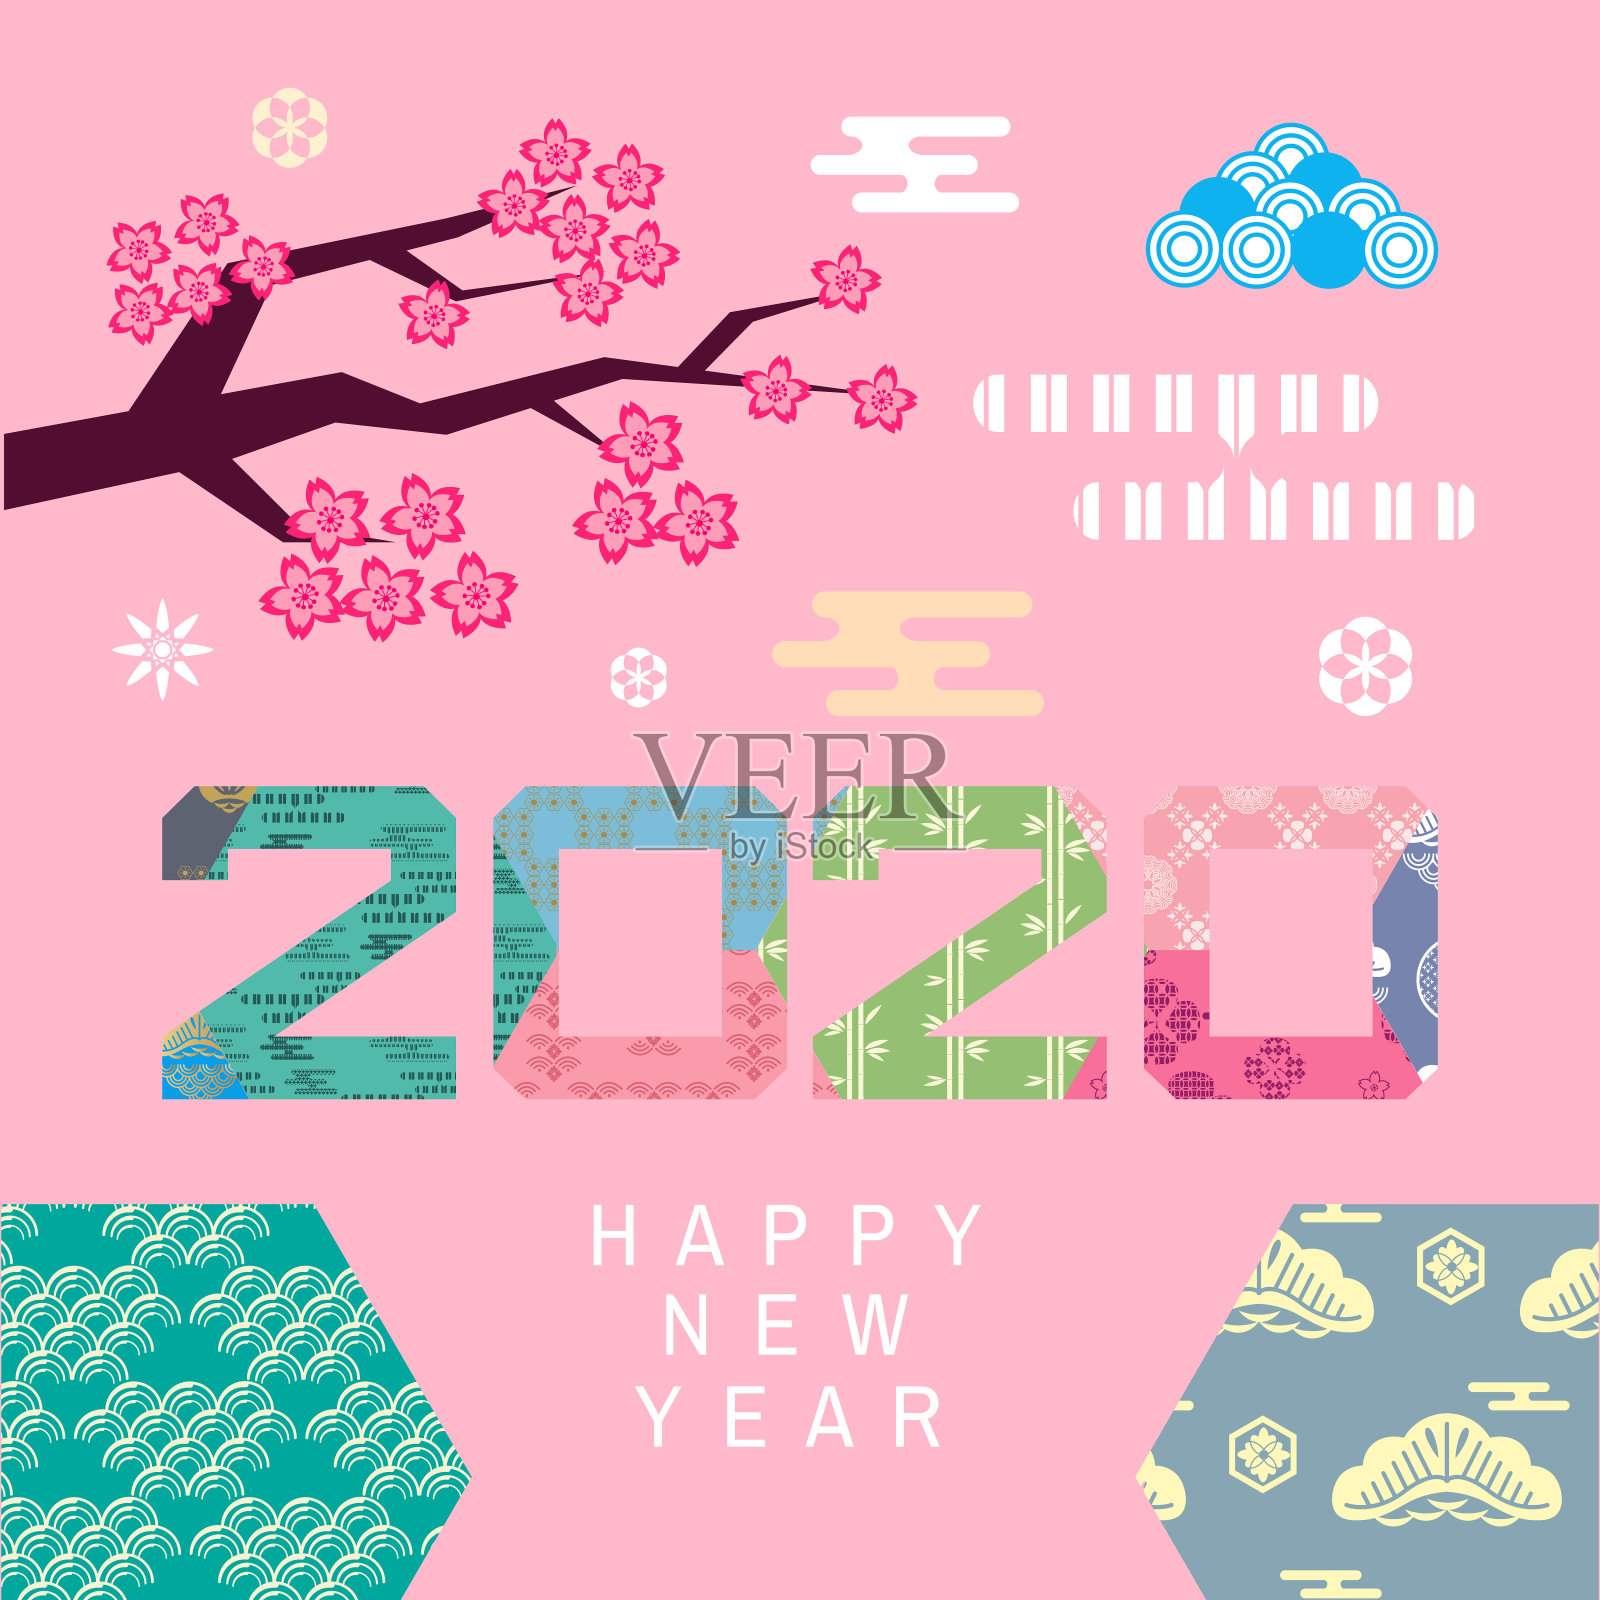 祝中国2020年鼠年新年快乐。设计模板素材